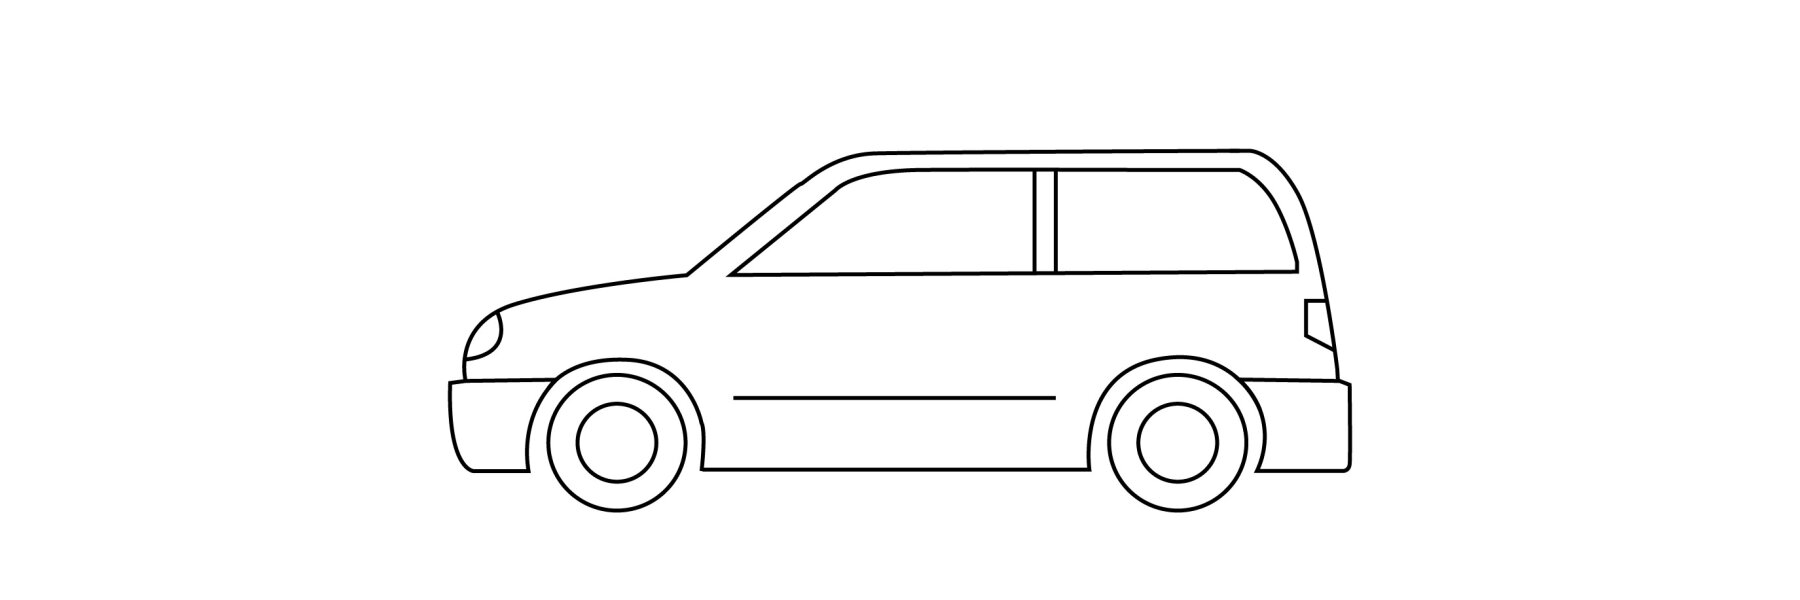 Dacia Duster Admirable von LZParts mit Unibar und Vision X LED  Zusatzscheinwerfer 